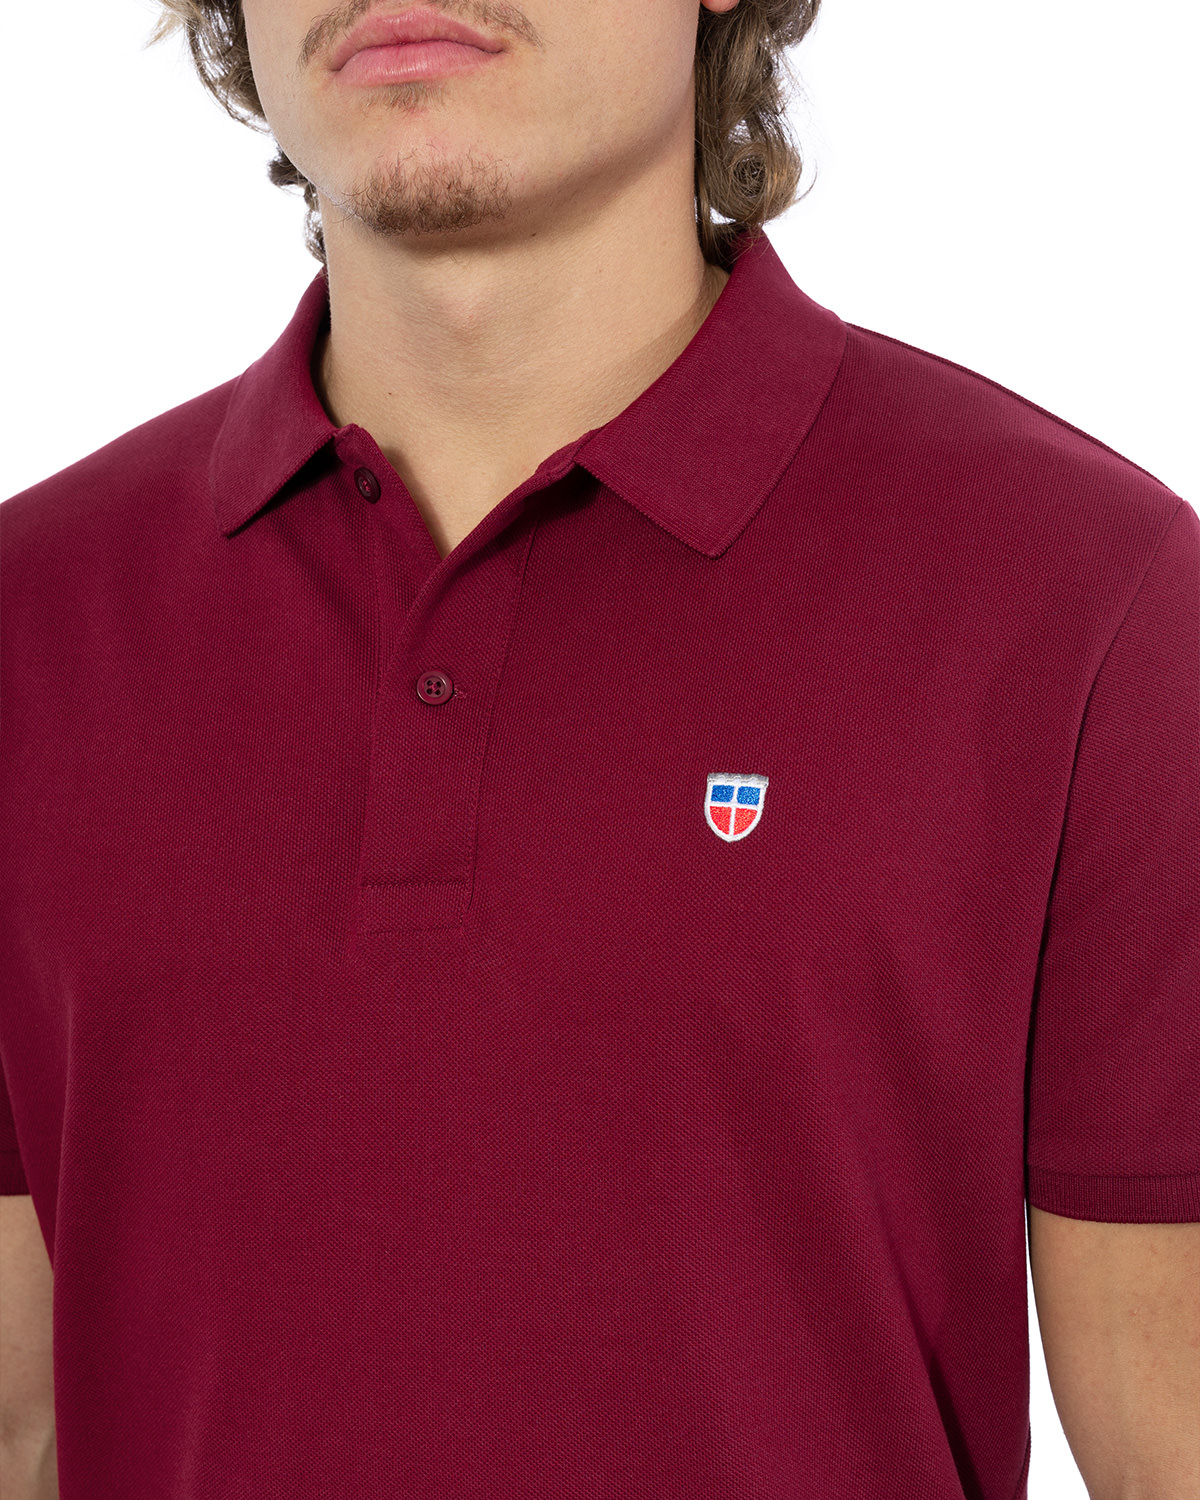 LA SARRE – Herren Bordeaux für in mit Wappen-Stickerei Polo-Shirt